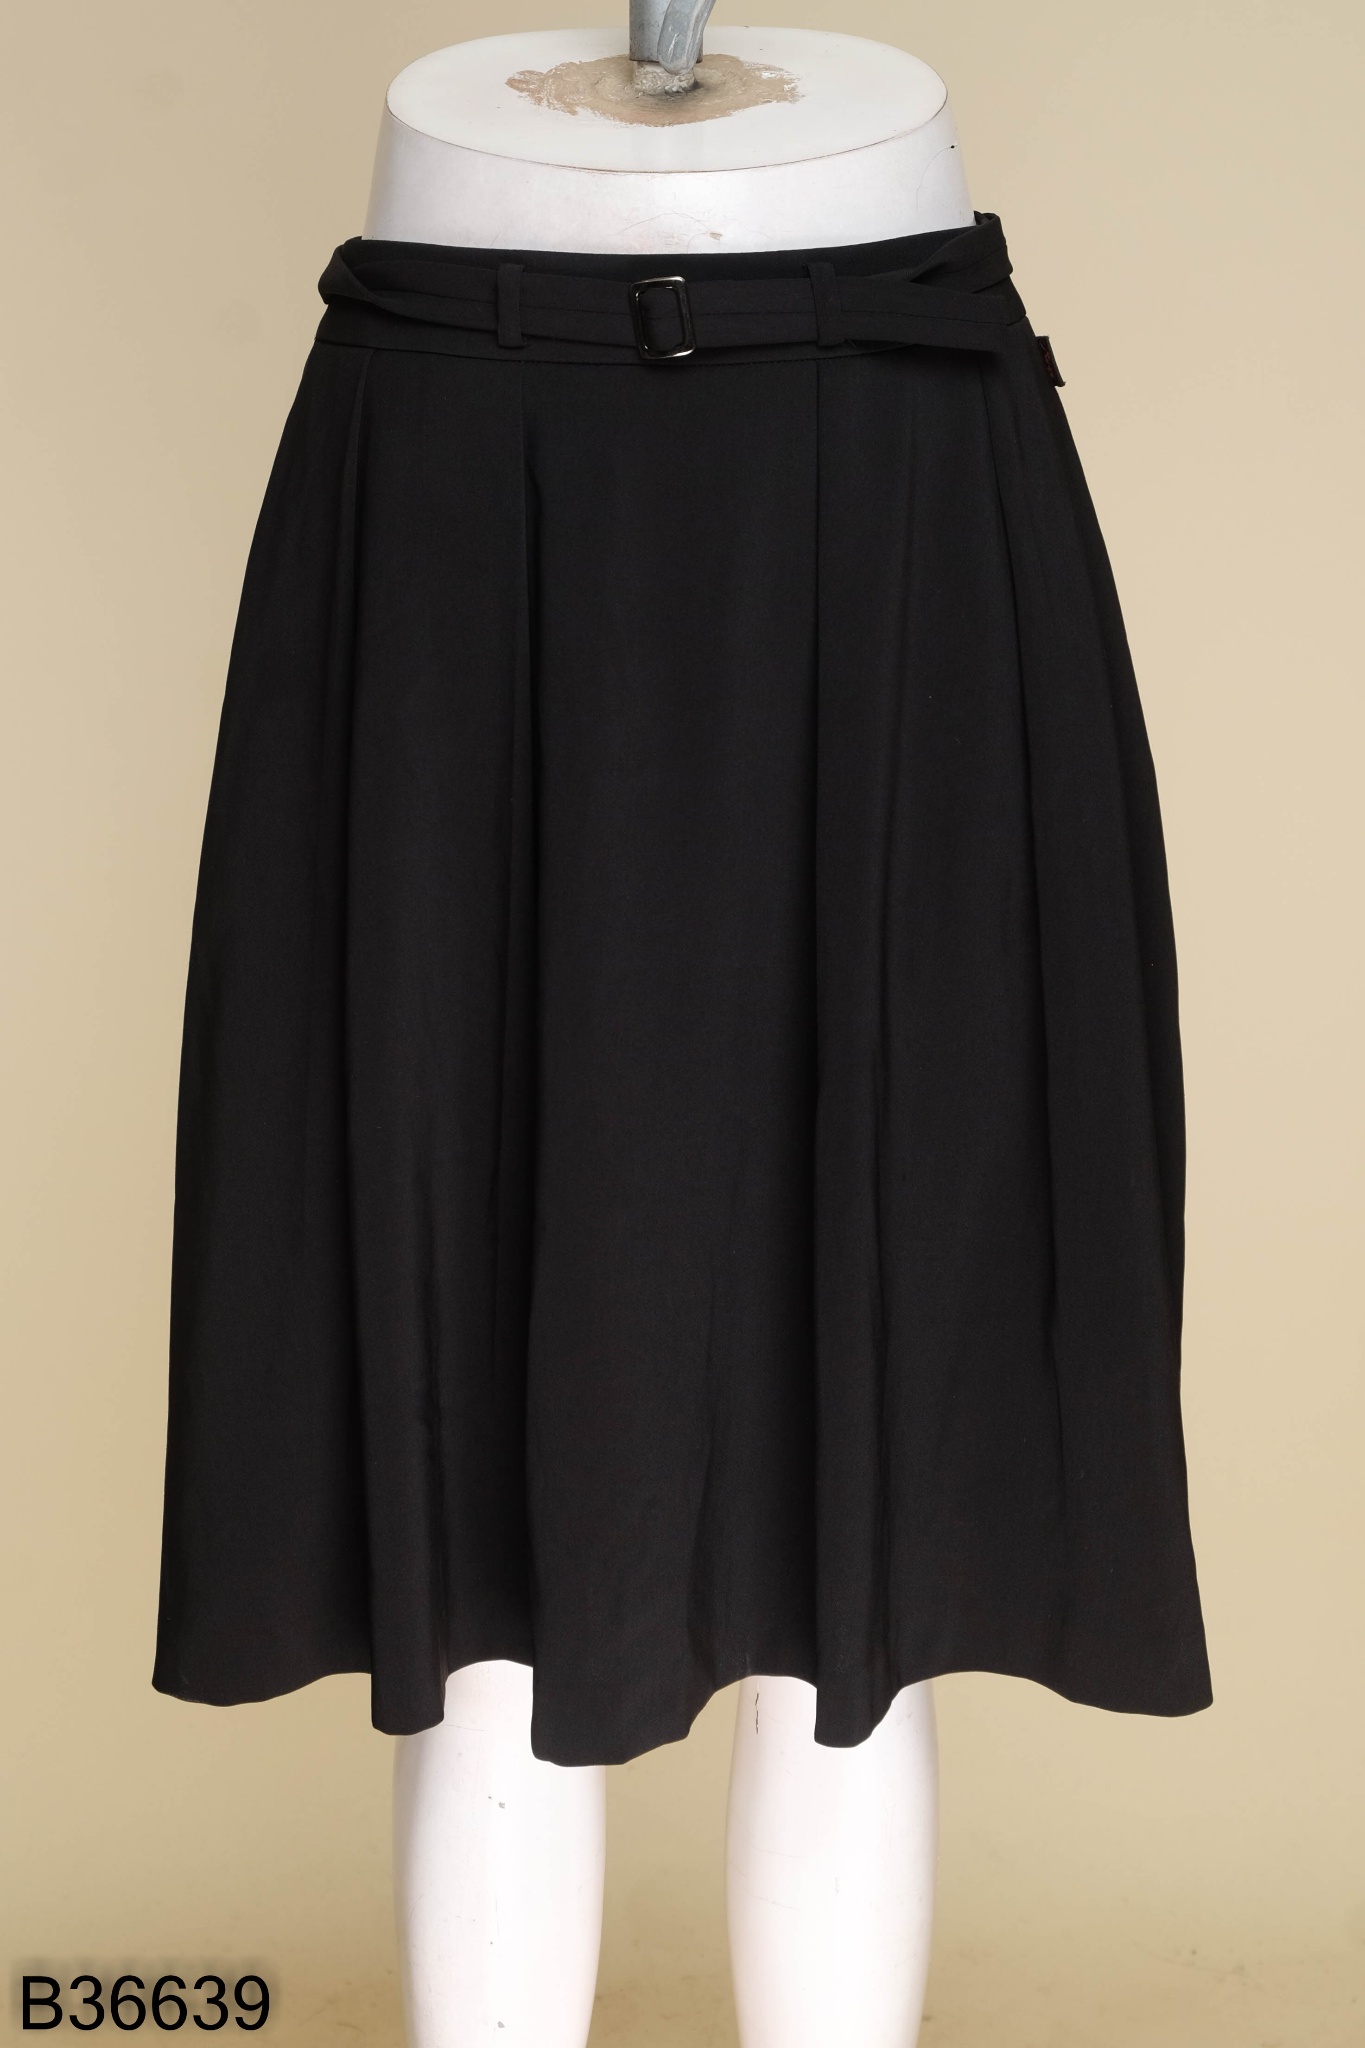 36529B82 - Chân váy đen giả da, dáng xếp ly xòe Thời trang nữ Toson